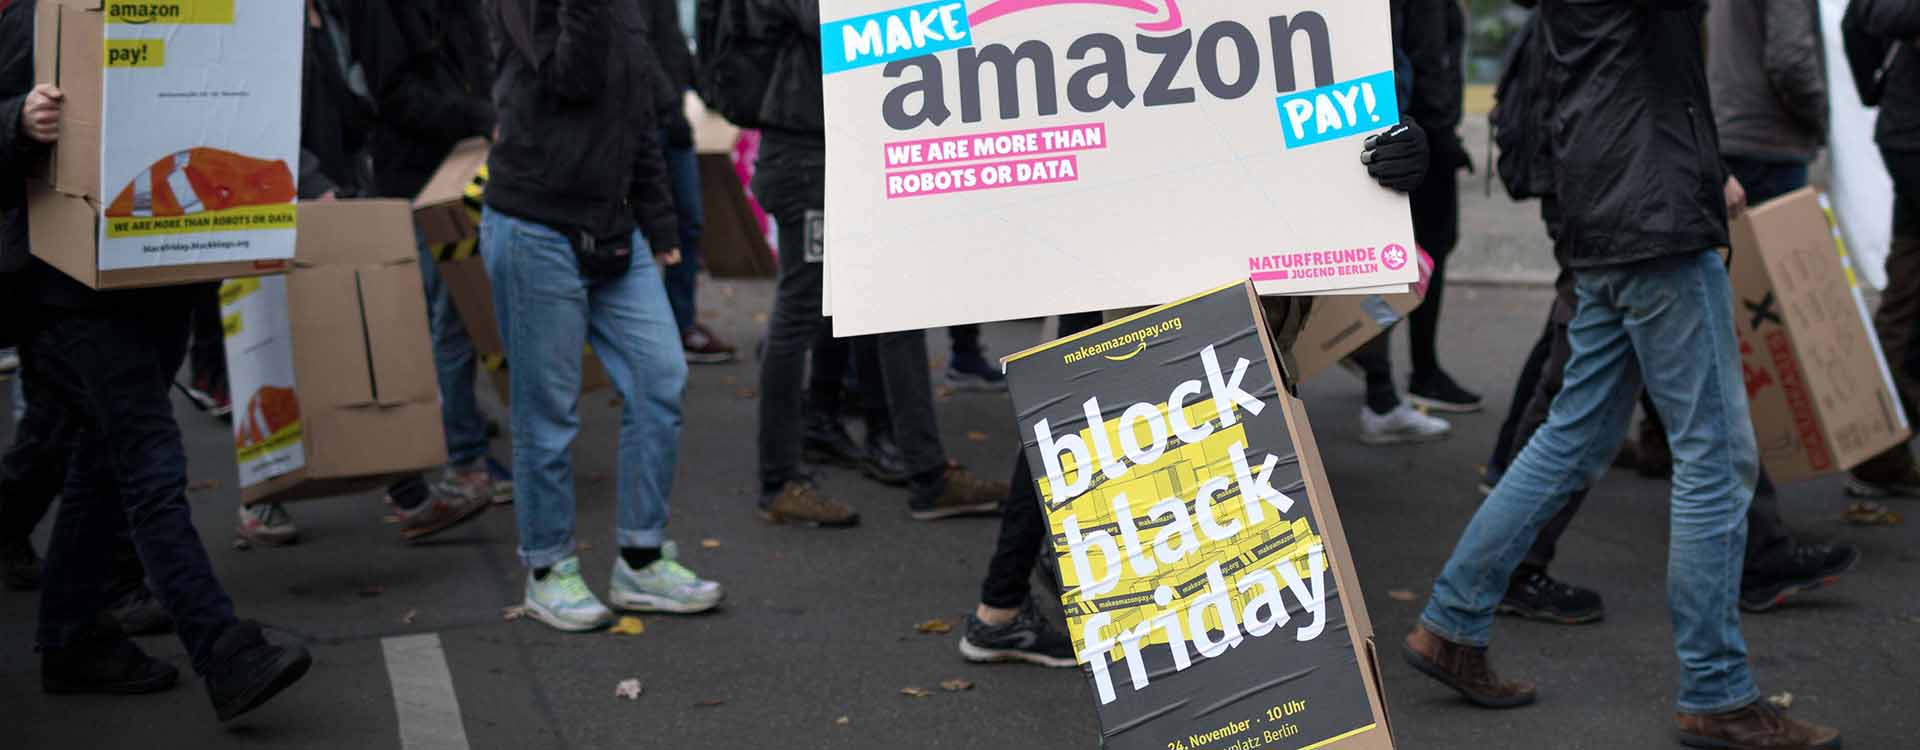 Amazon: Block Black Friday